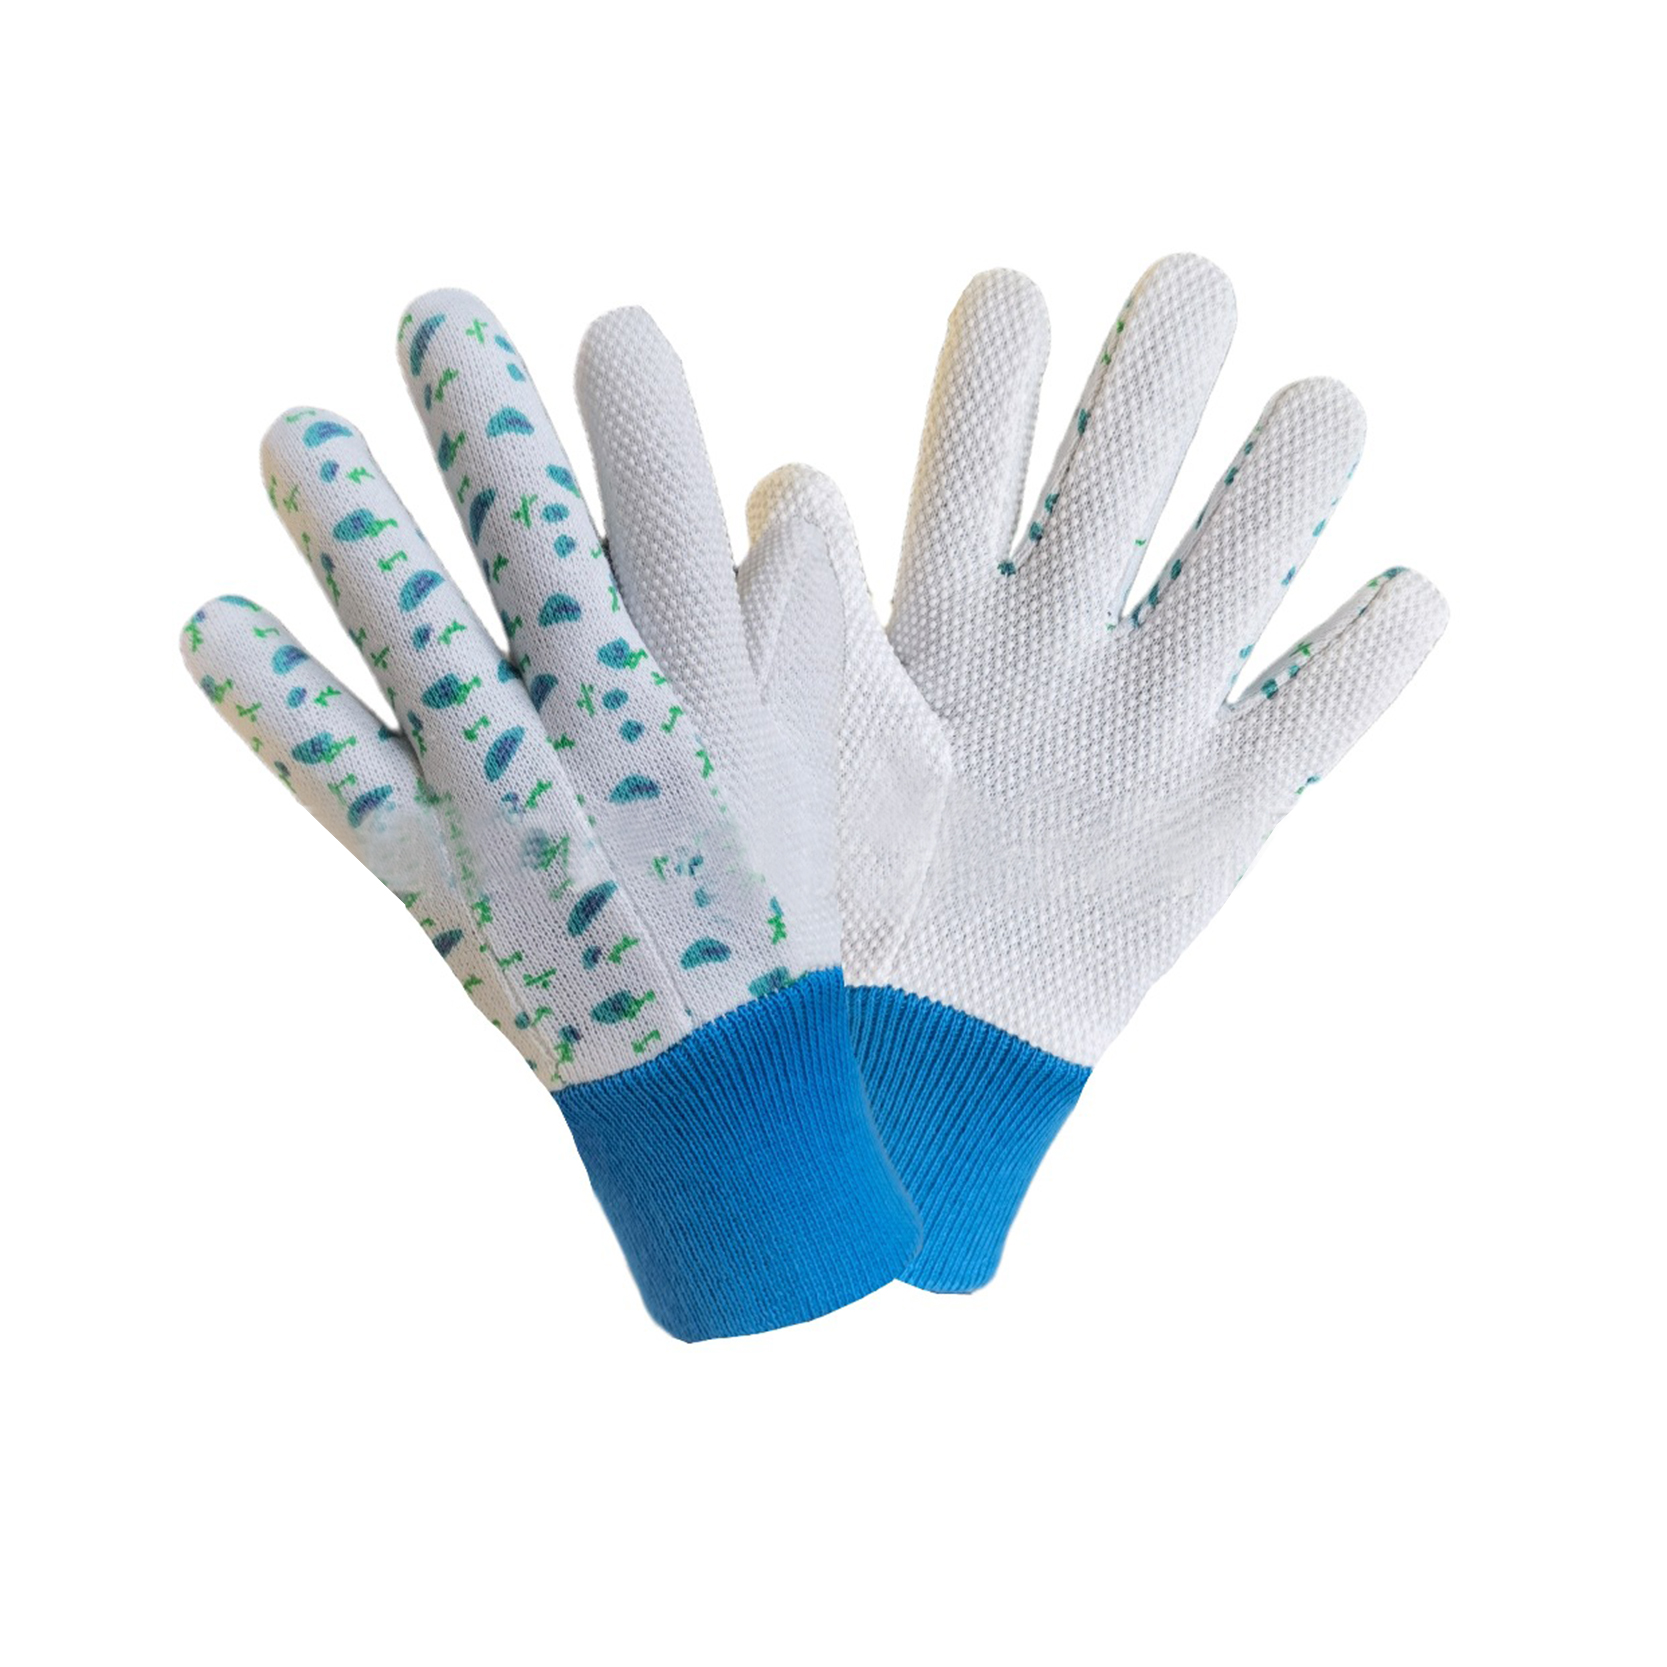 Gartenarbeitshandschuhe mit PVC-Punkten auf der Handfläche, Preis für Damenhandschuhe